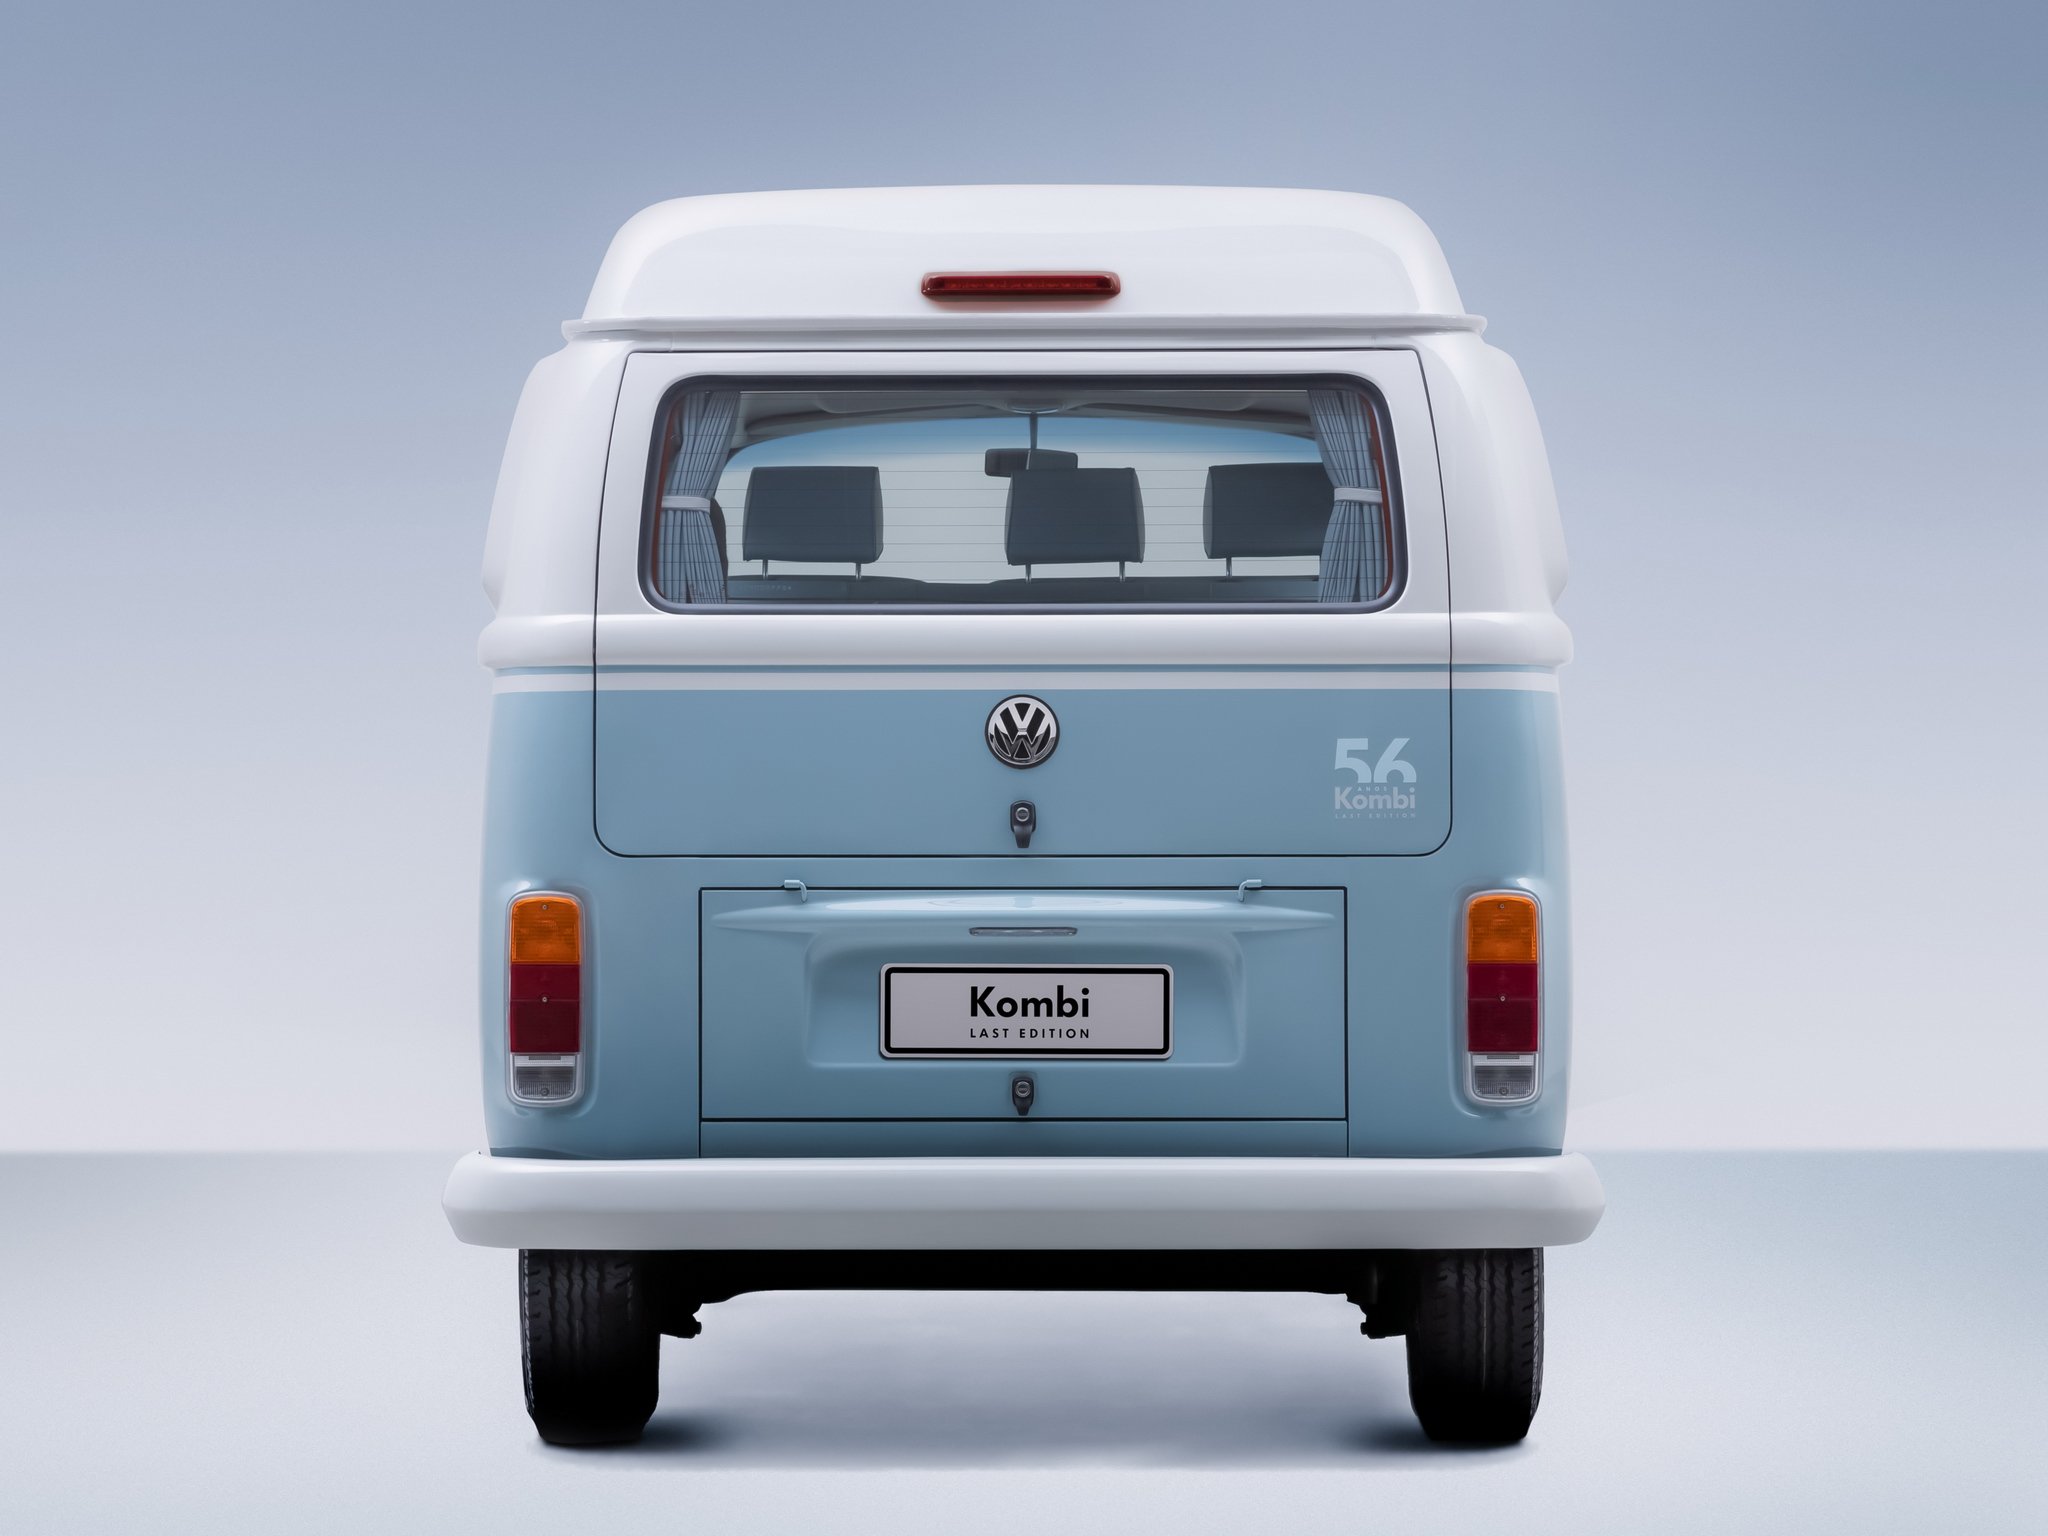 2013, Volkswagen, Kombi, Last, Edition, Bus, Van, Tw Wallpaper